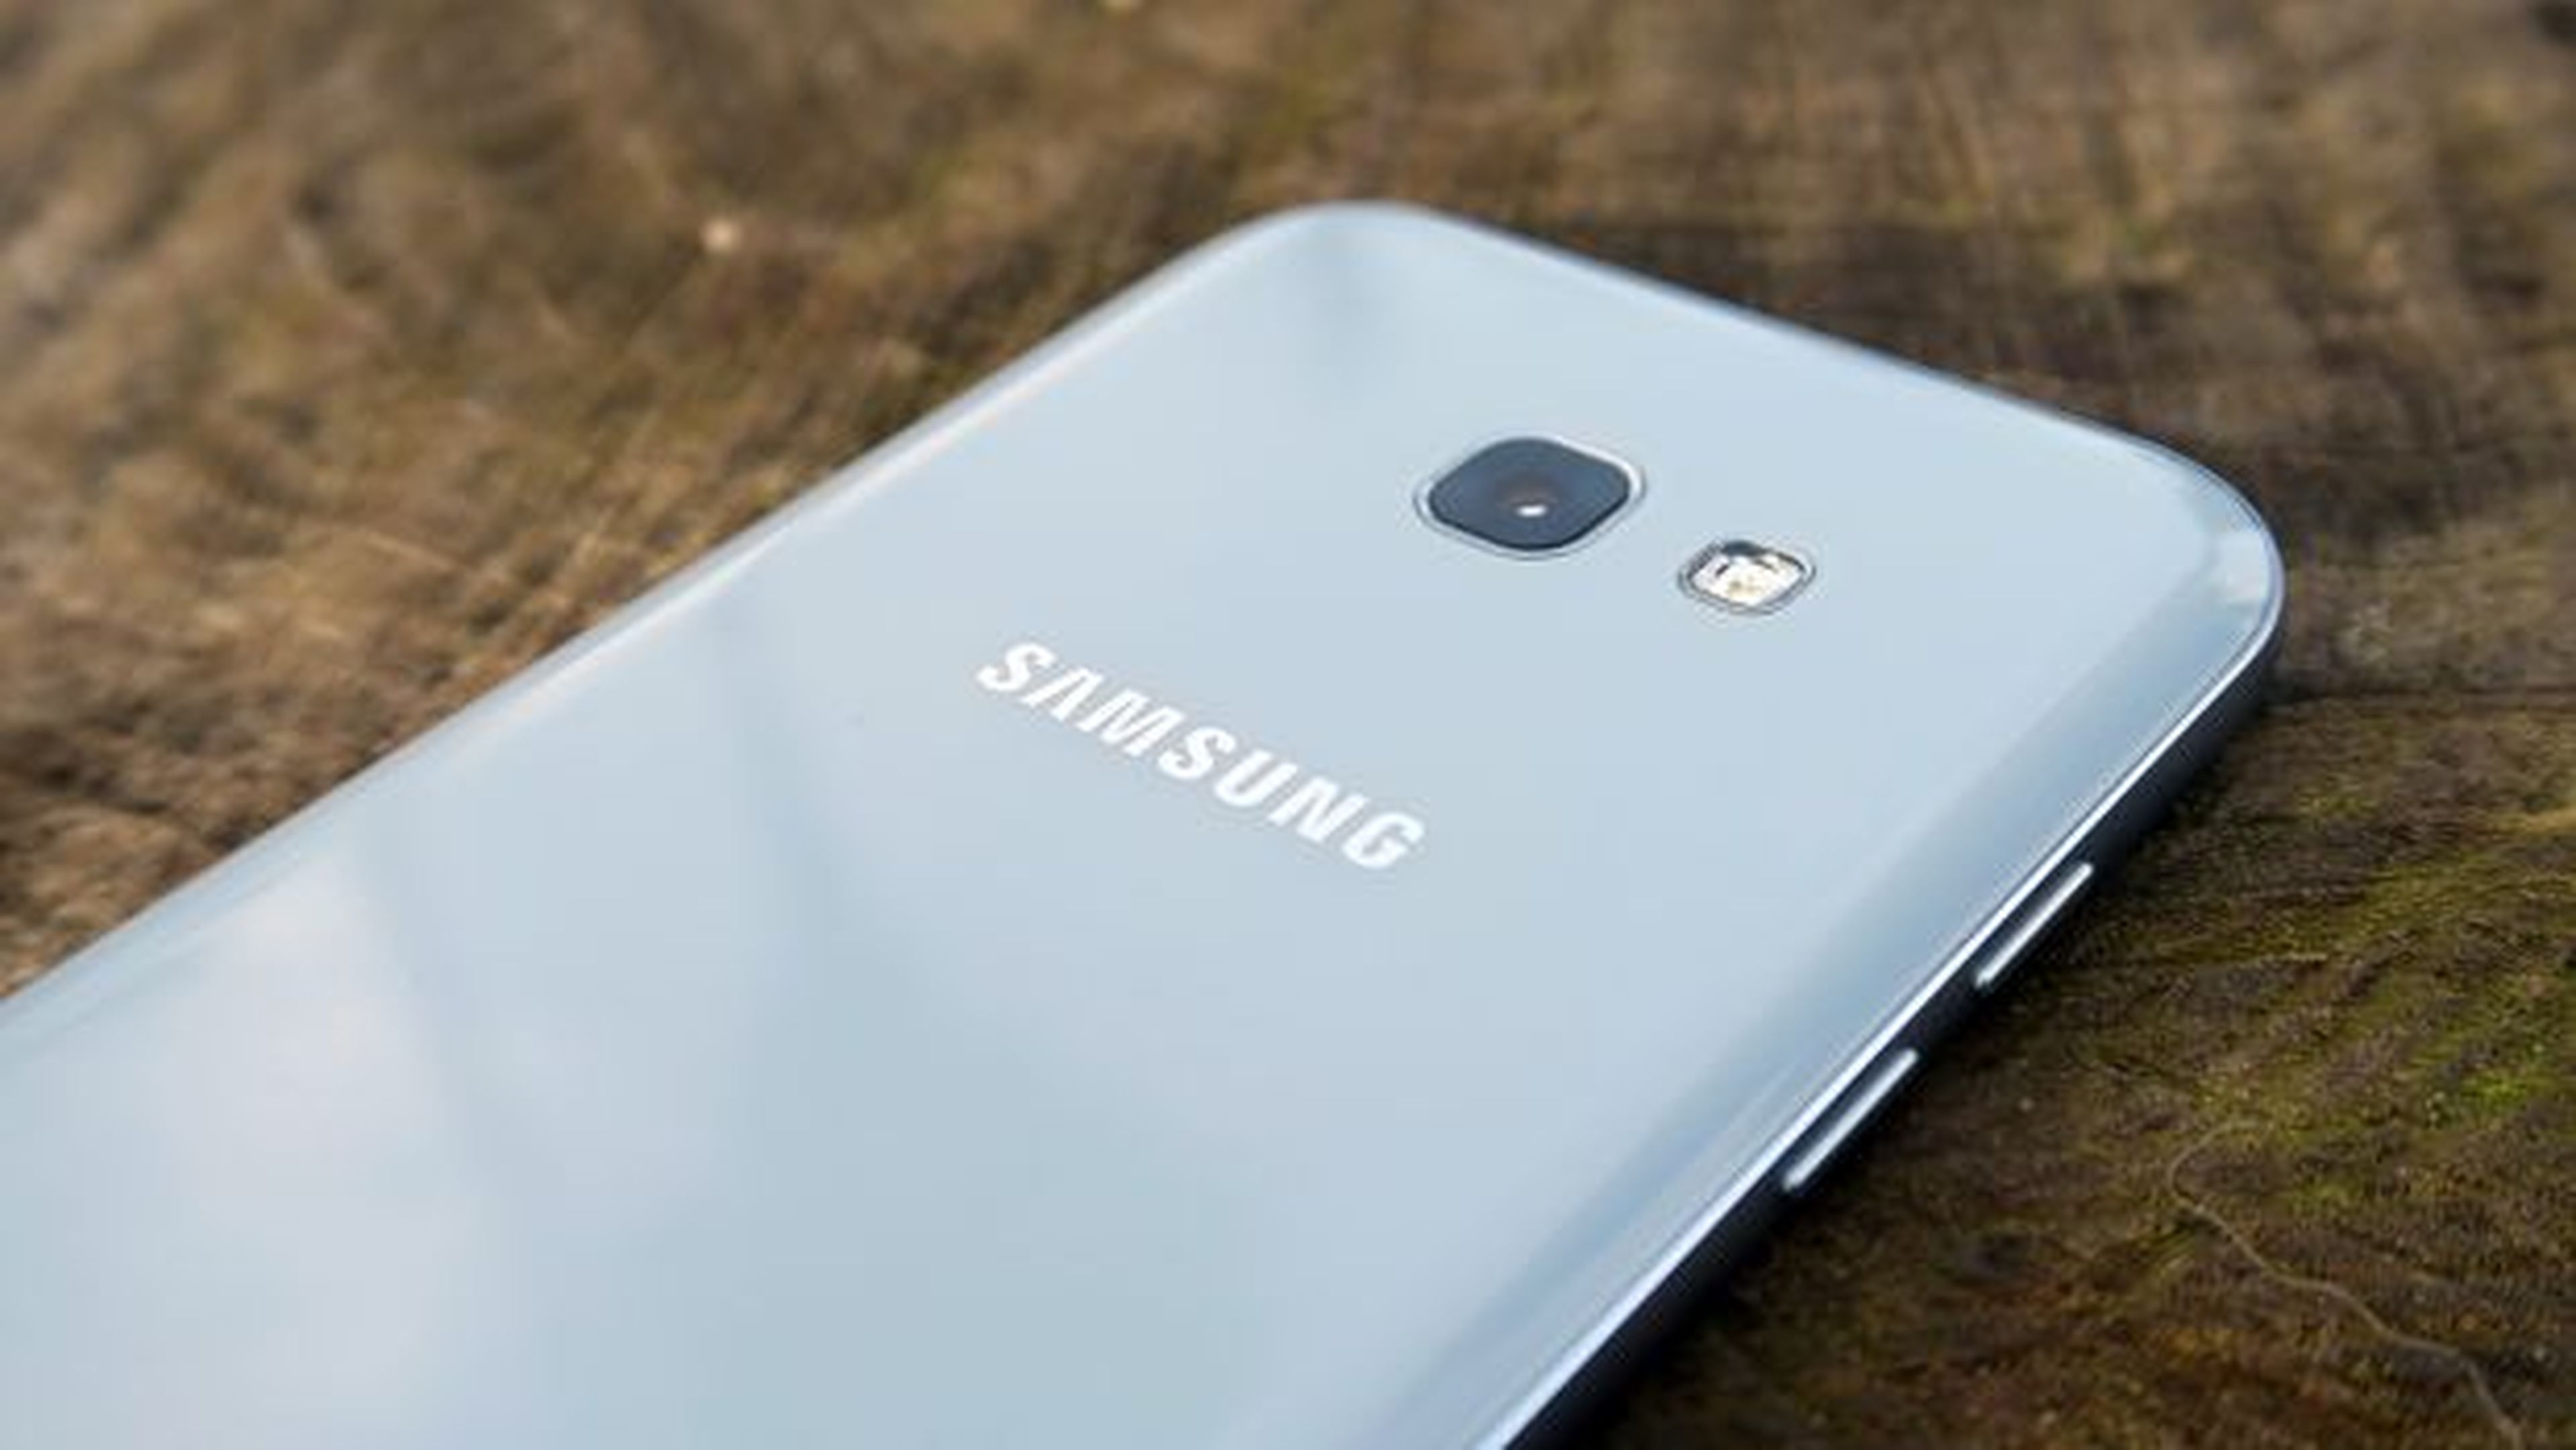 Servicio oportunidad Vicio Samsung Galaxy A5 (2017), análisis y opinión | Computer Hoy